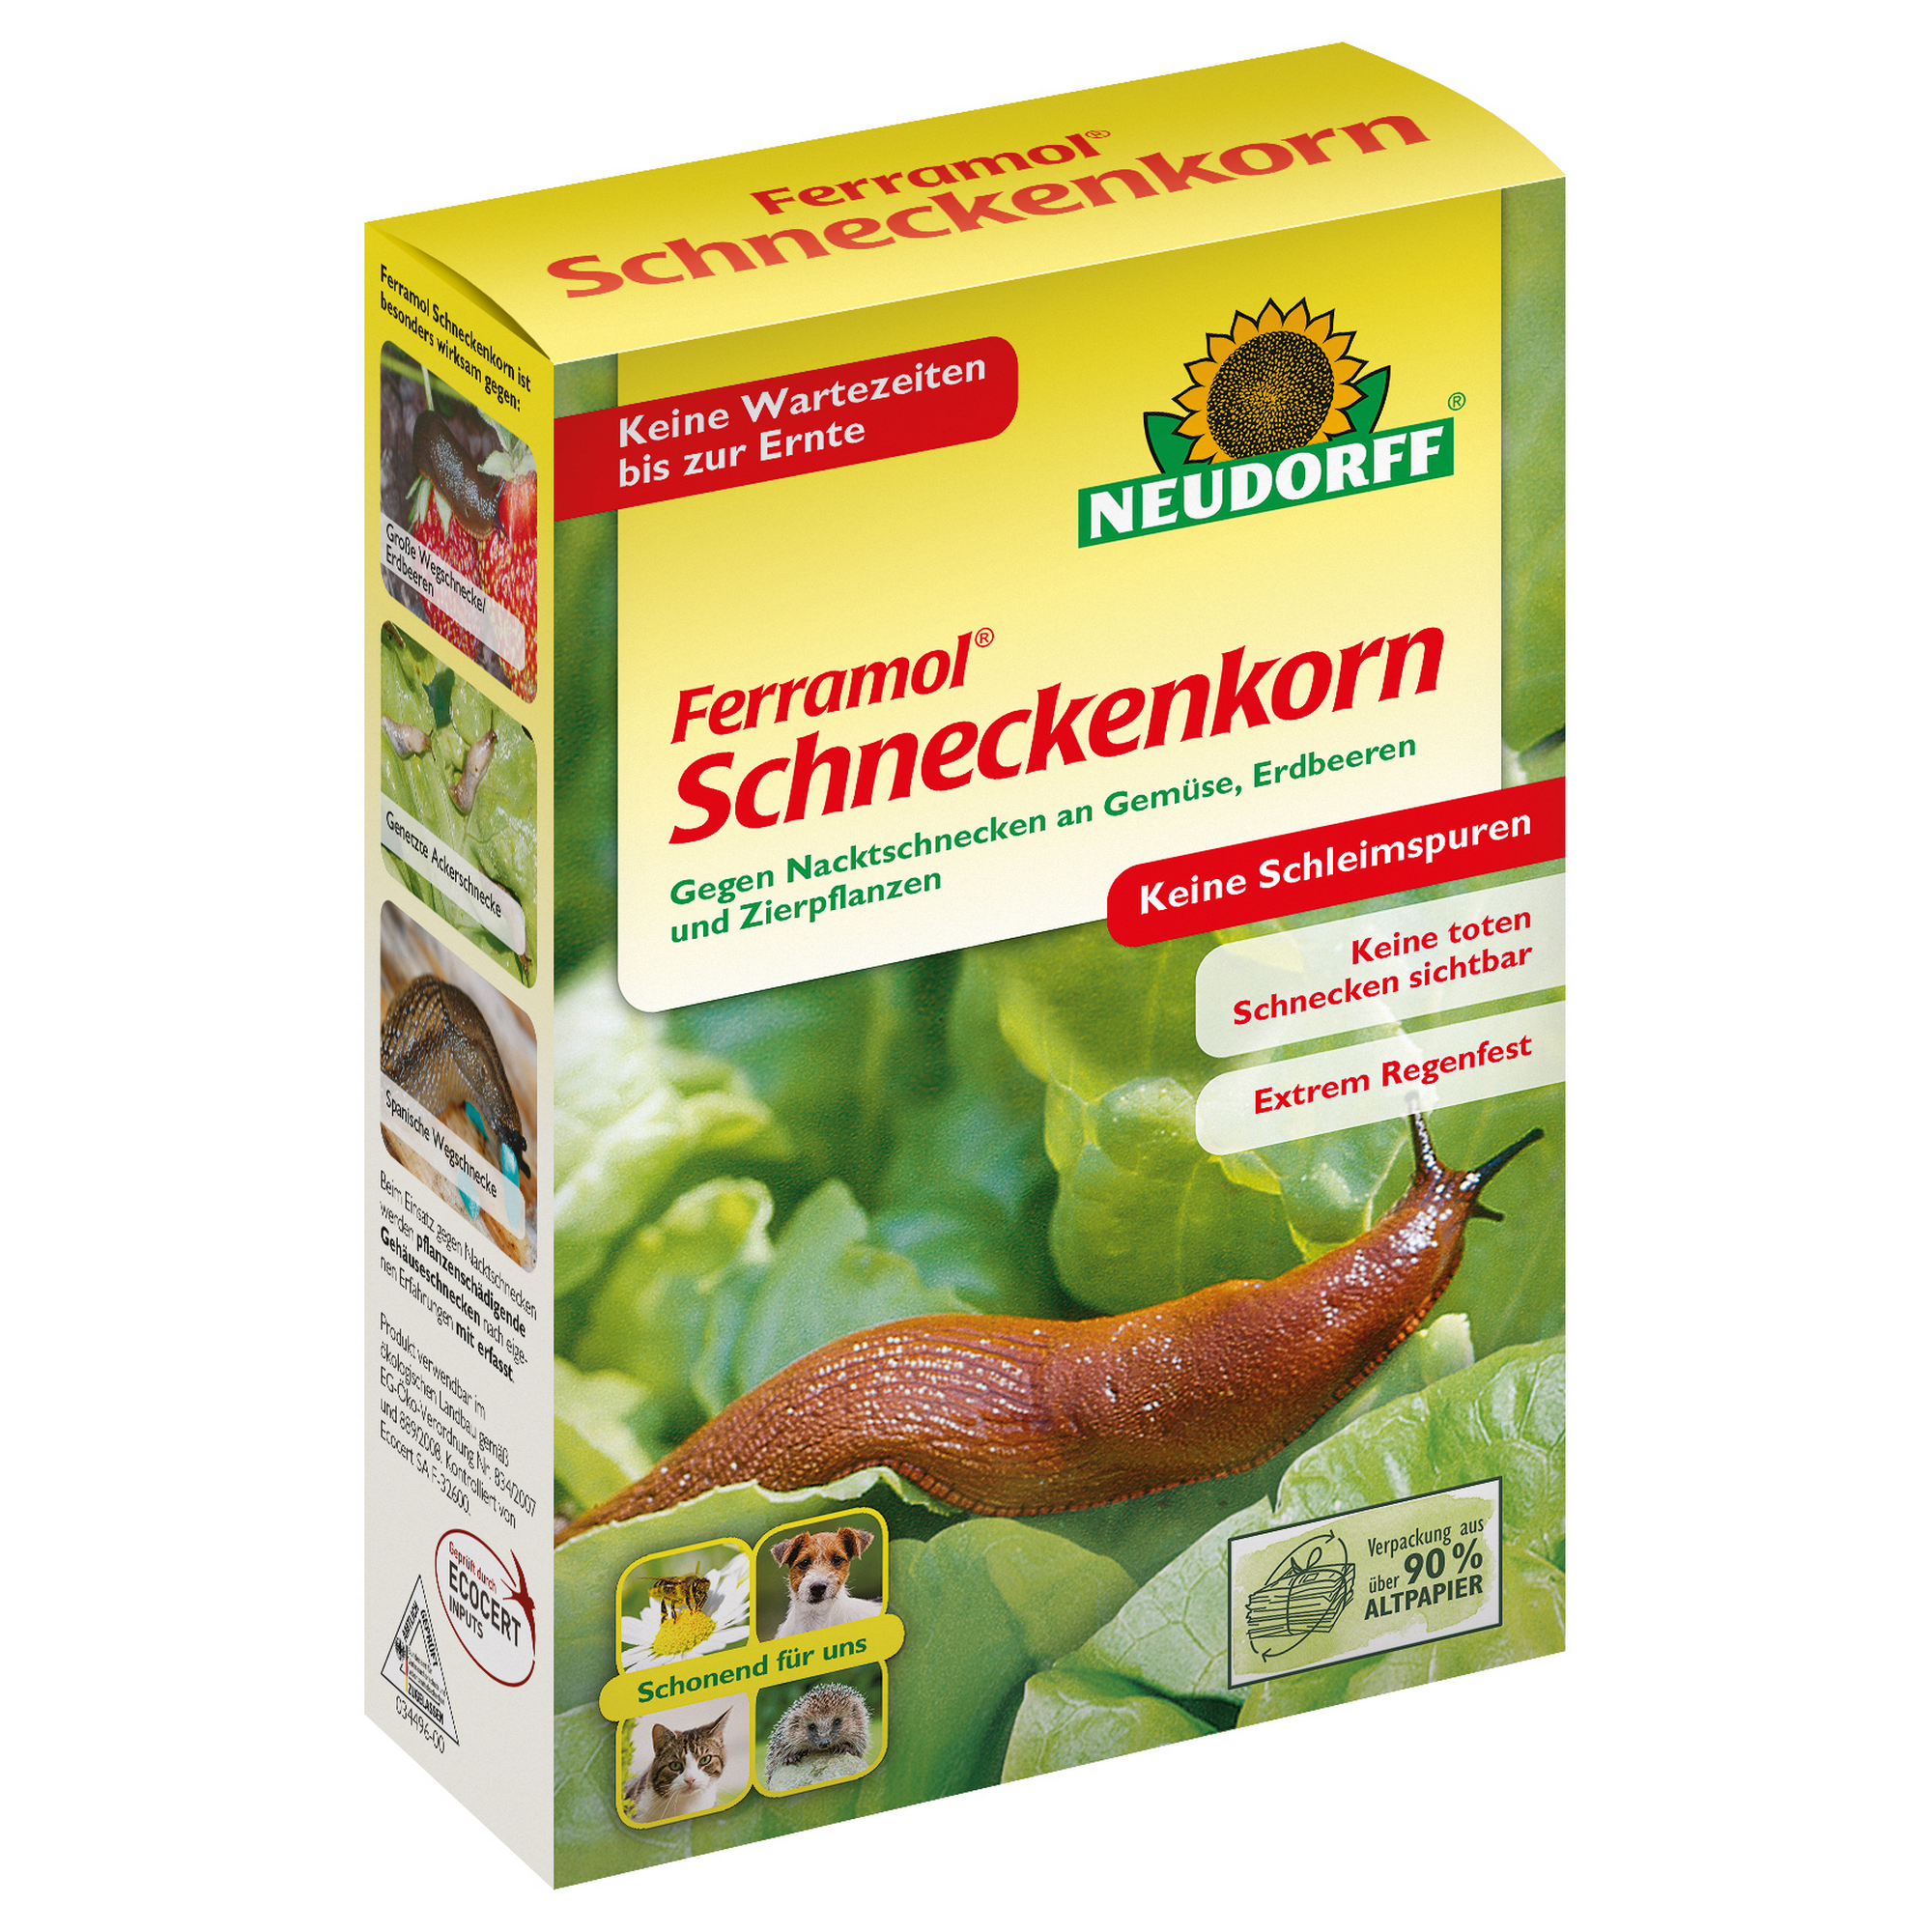 Ferramol Schneckenkorn 200 g + product picture